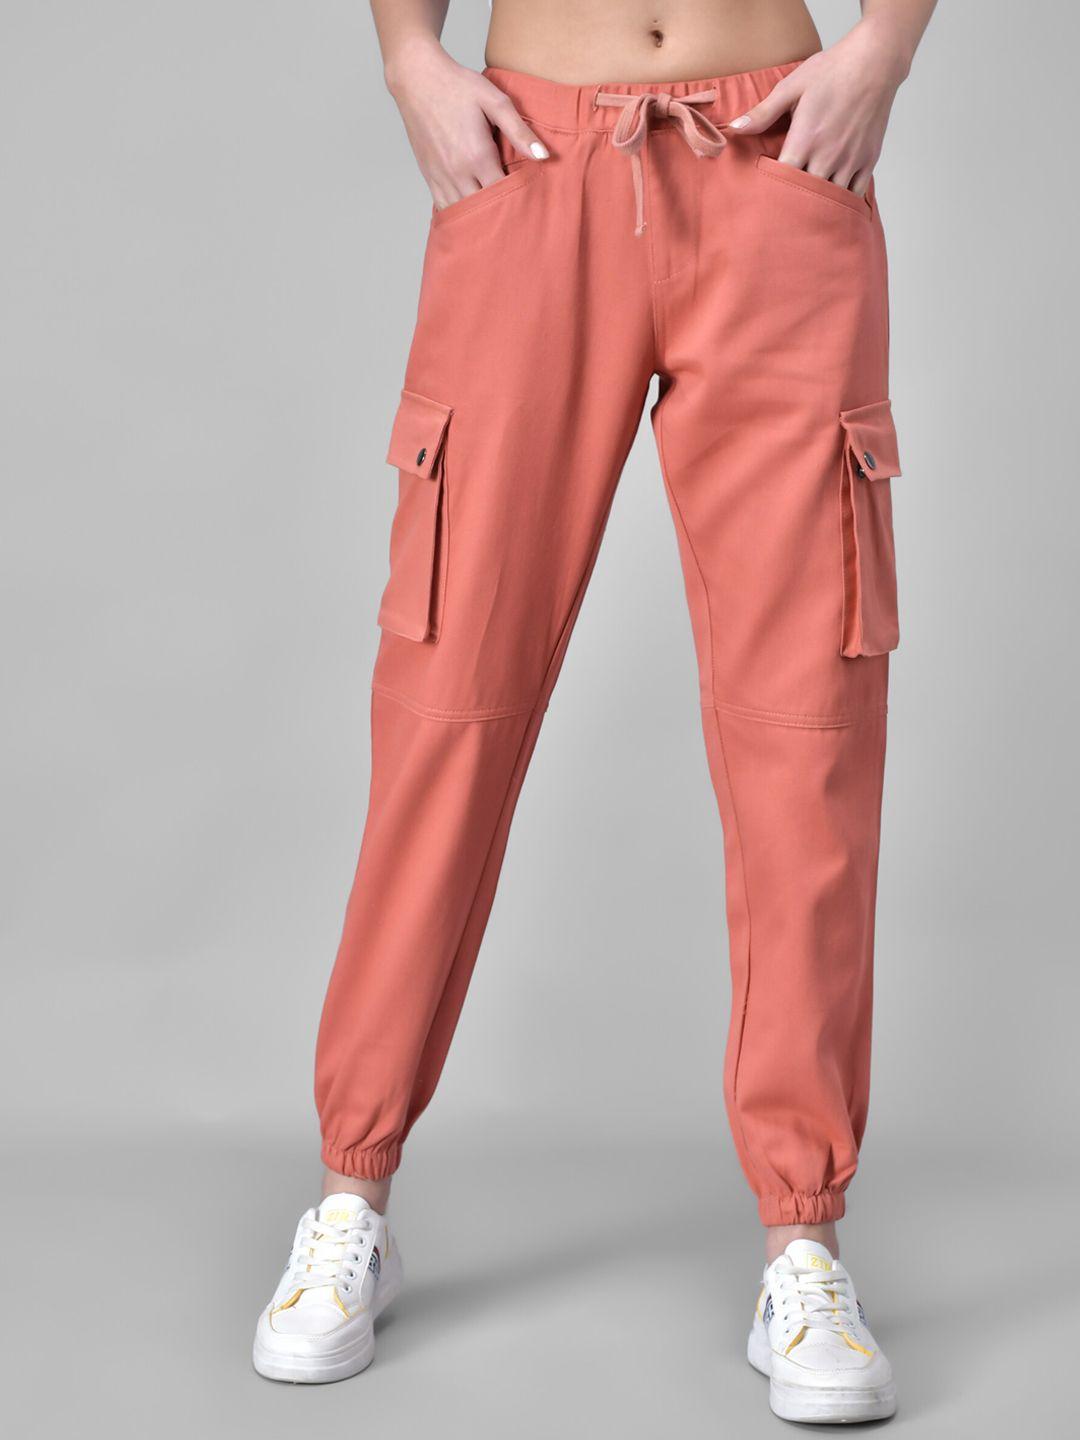 q-rious women peach-coloured joggers trousers